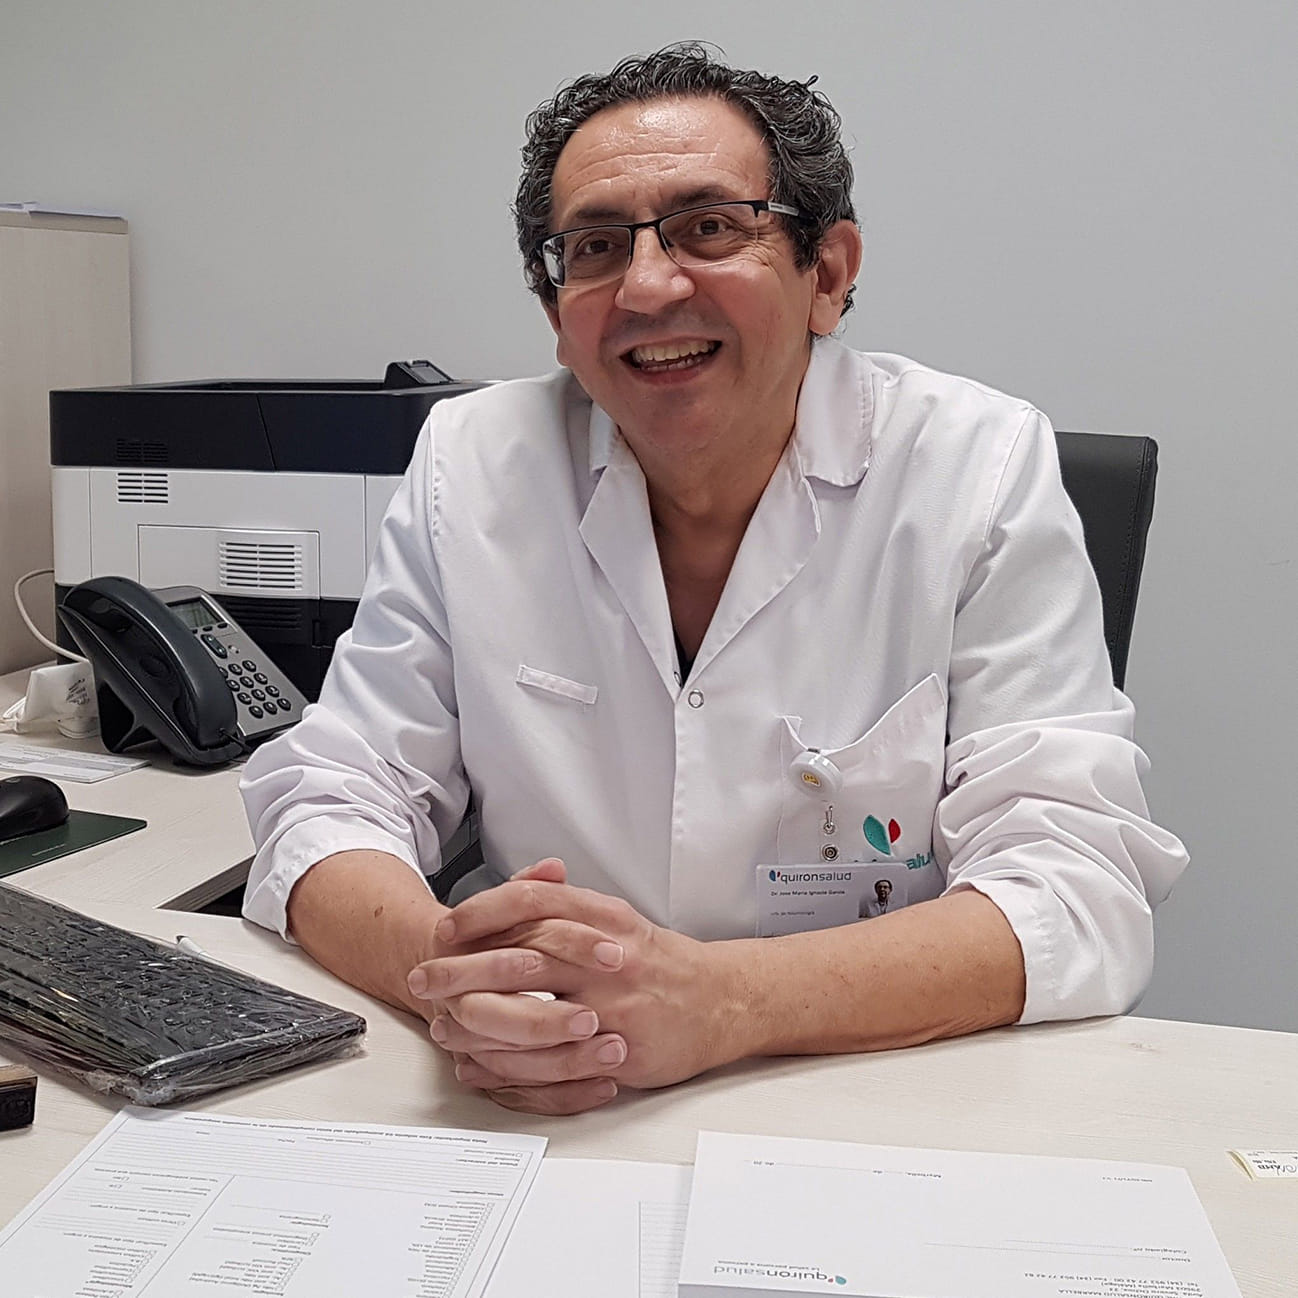 Hablamos con el Dr. José María Ignacio, jefe del Servicio de Neumología del Hospital Quirónsalud Marbella